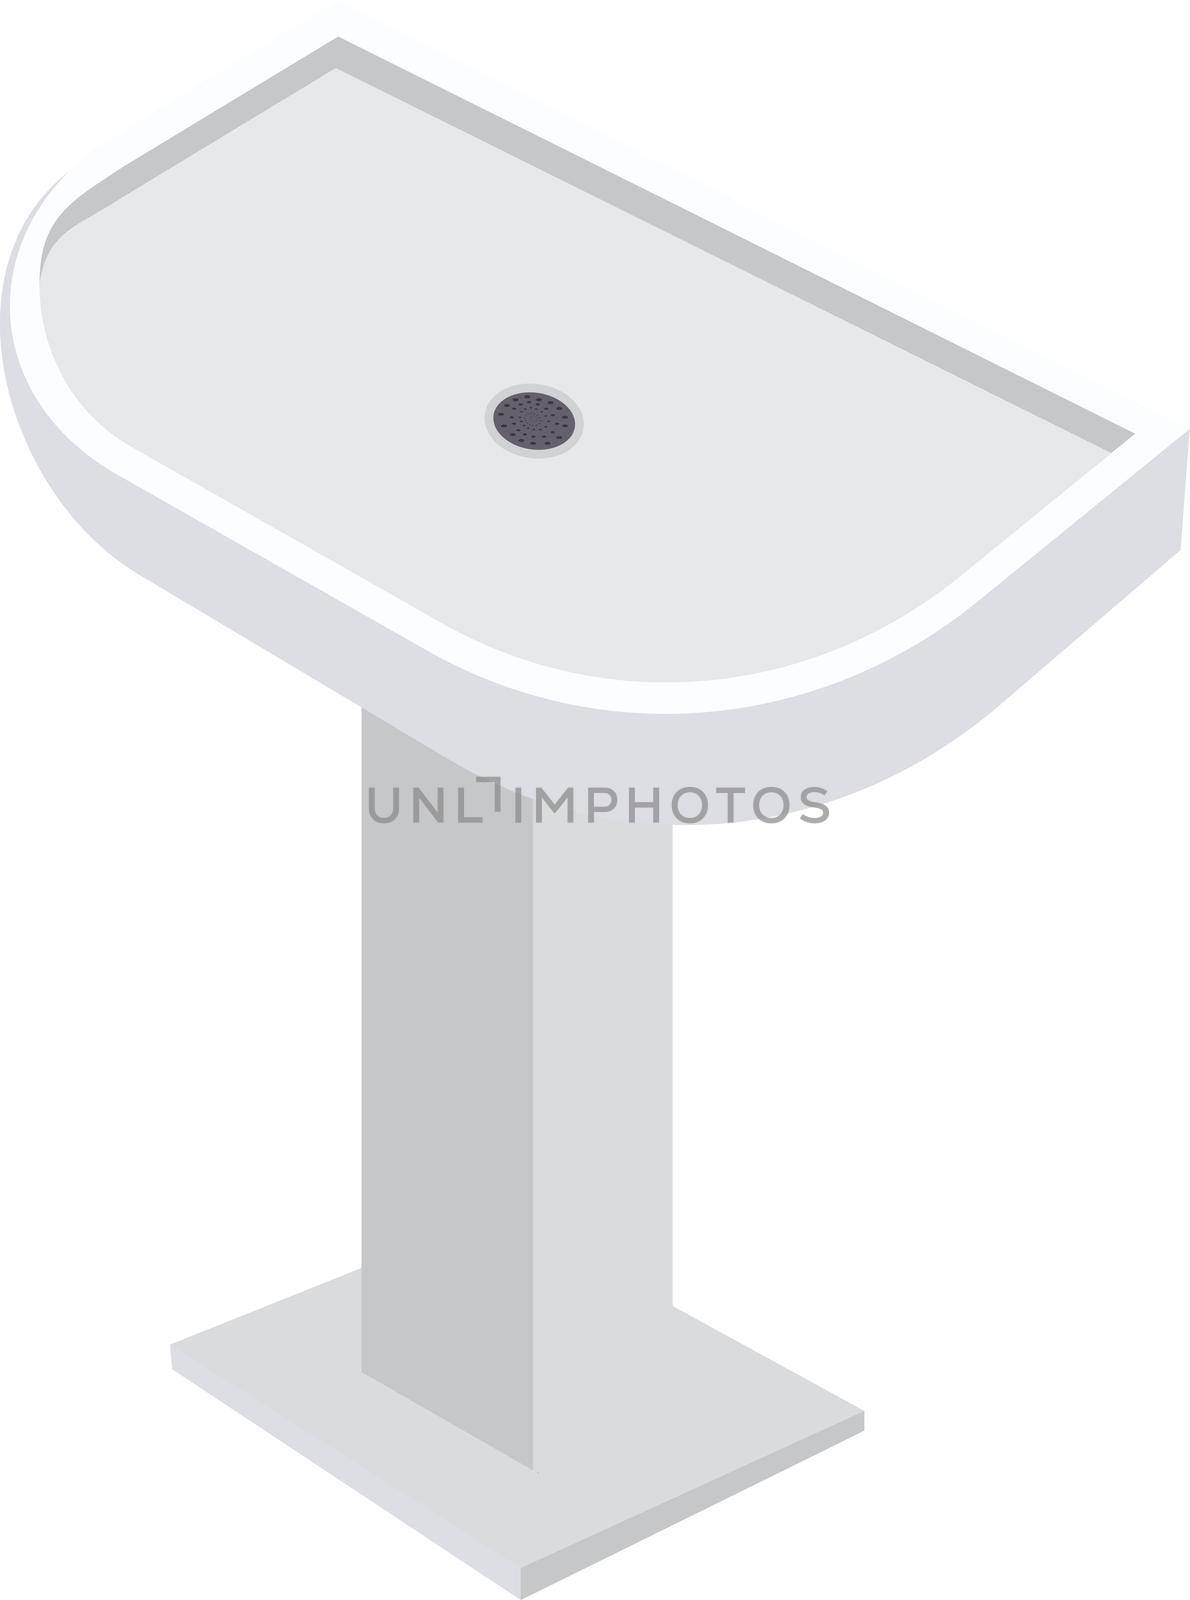 White washbasin, illustration, vector on white background. by Morphart